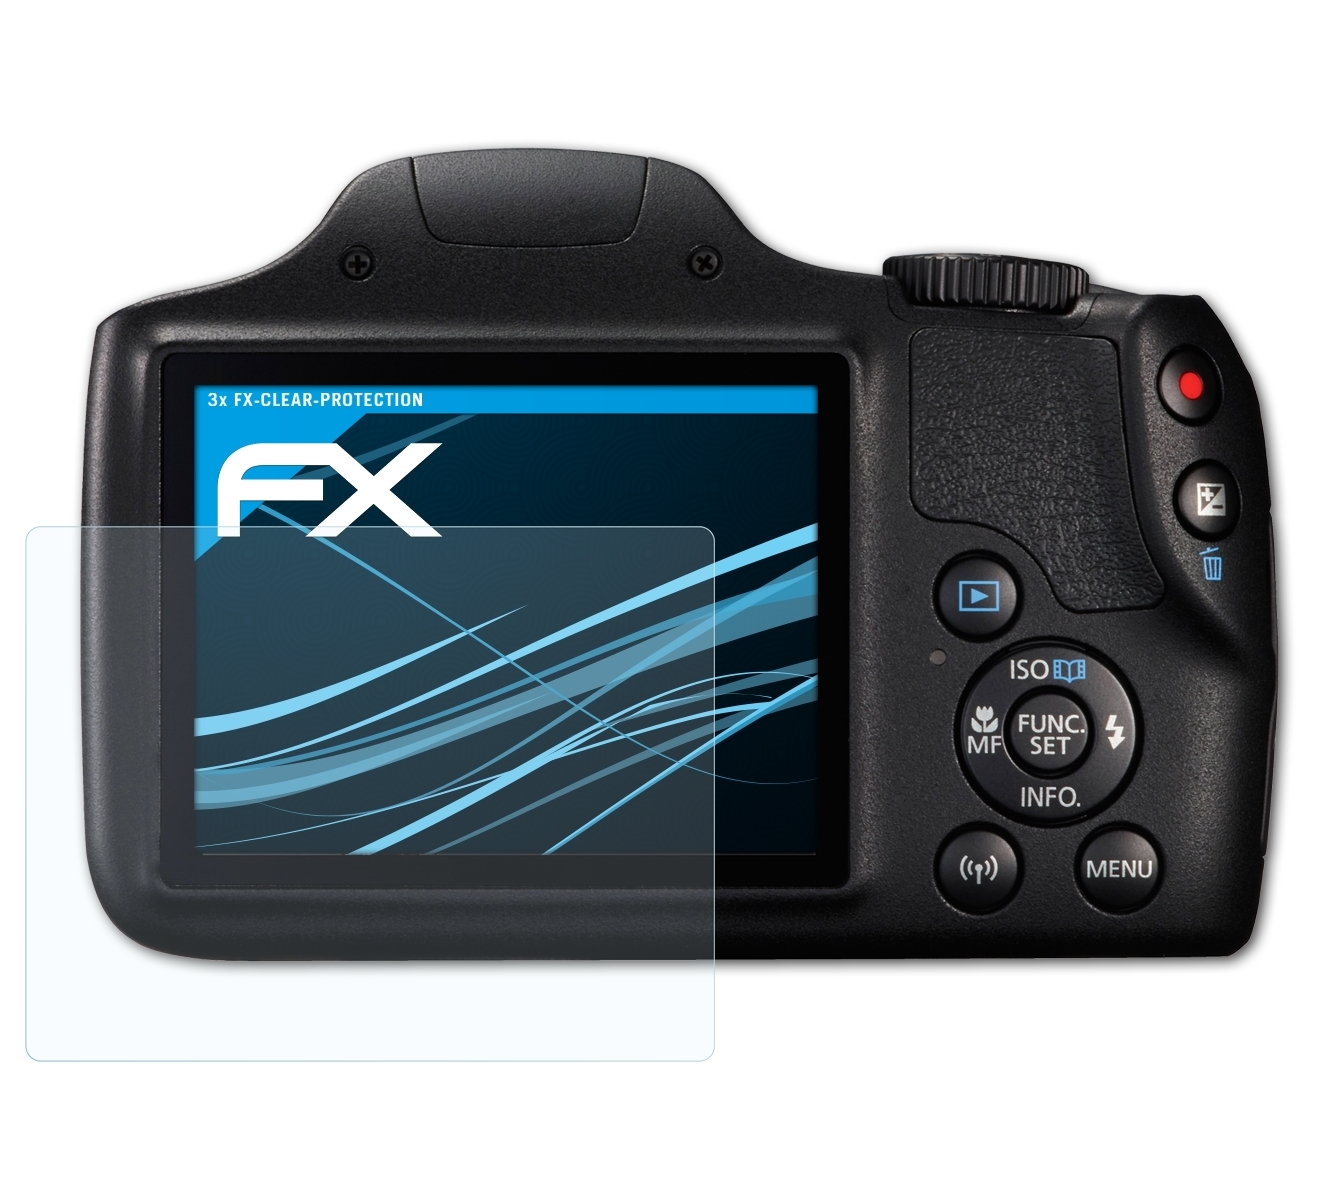 ATFOLIX Displayschutz(für Canon 3x PowerShot HS) FX-Clear SX540